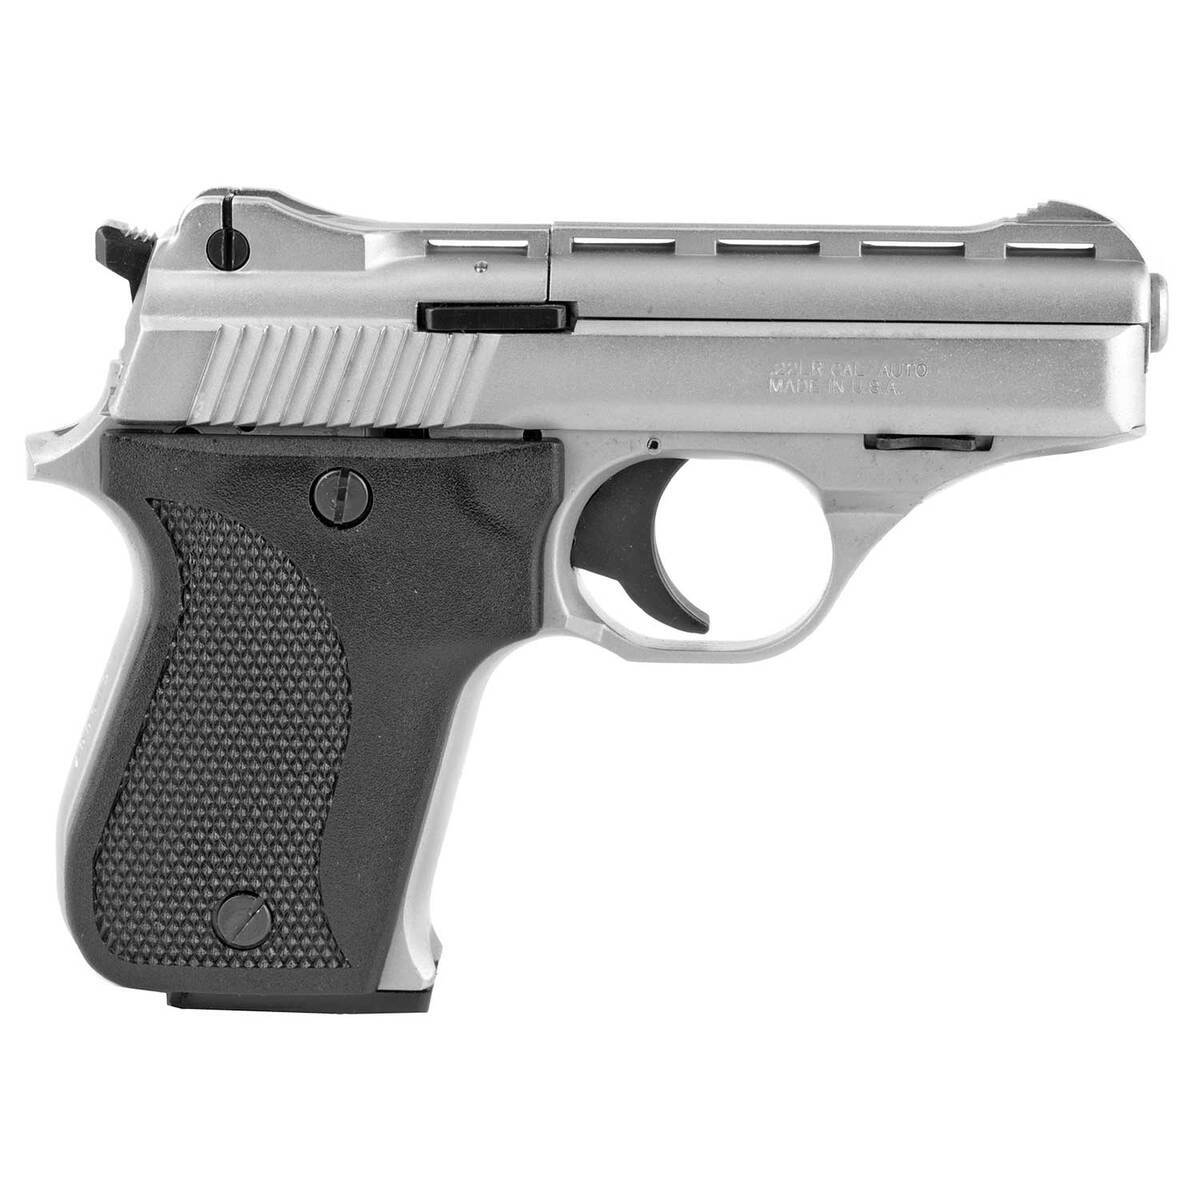 https://www.sportsmans.com/medias/phoenix-arms-hp22a-long-rifle-3in-satin-nickel-pistol-101-rounds-1818619-1.jpg?context=bWFzdGVyfGltYWdlc3w5MDU2NXxpbWFnZS9qcGVnfGgxYi9oZDIvMTEzNTk1OTg3Mzk0ODYvMTIwMC1jb252ZXJzaW9uRm9ybWF0X2Jhc2UtY29udmVyc2lvbkZvcm1hdF9zbXctMTgxODYxOS0xLmpwZ3w1NmIwZDFjMTg0OTBjZTc0YzZlZjViMmZmZTEyMGJlYzE5MDkzOGUyZmViMTQxN2I3ZmU2N2MwZWMxNzc1ZWNi